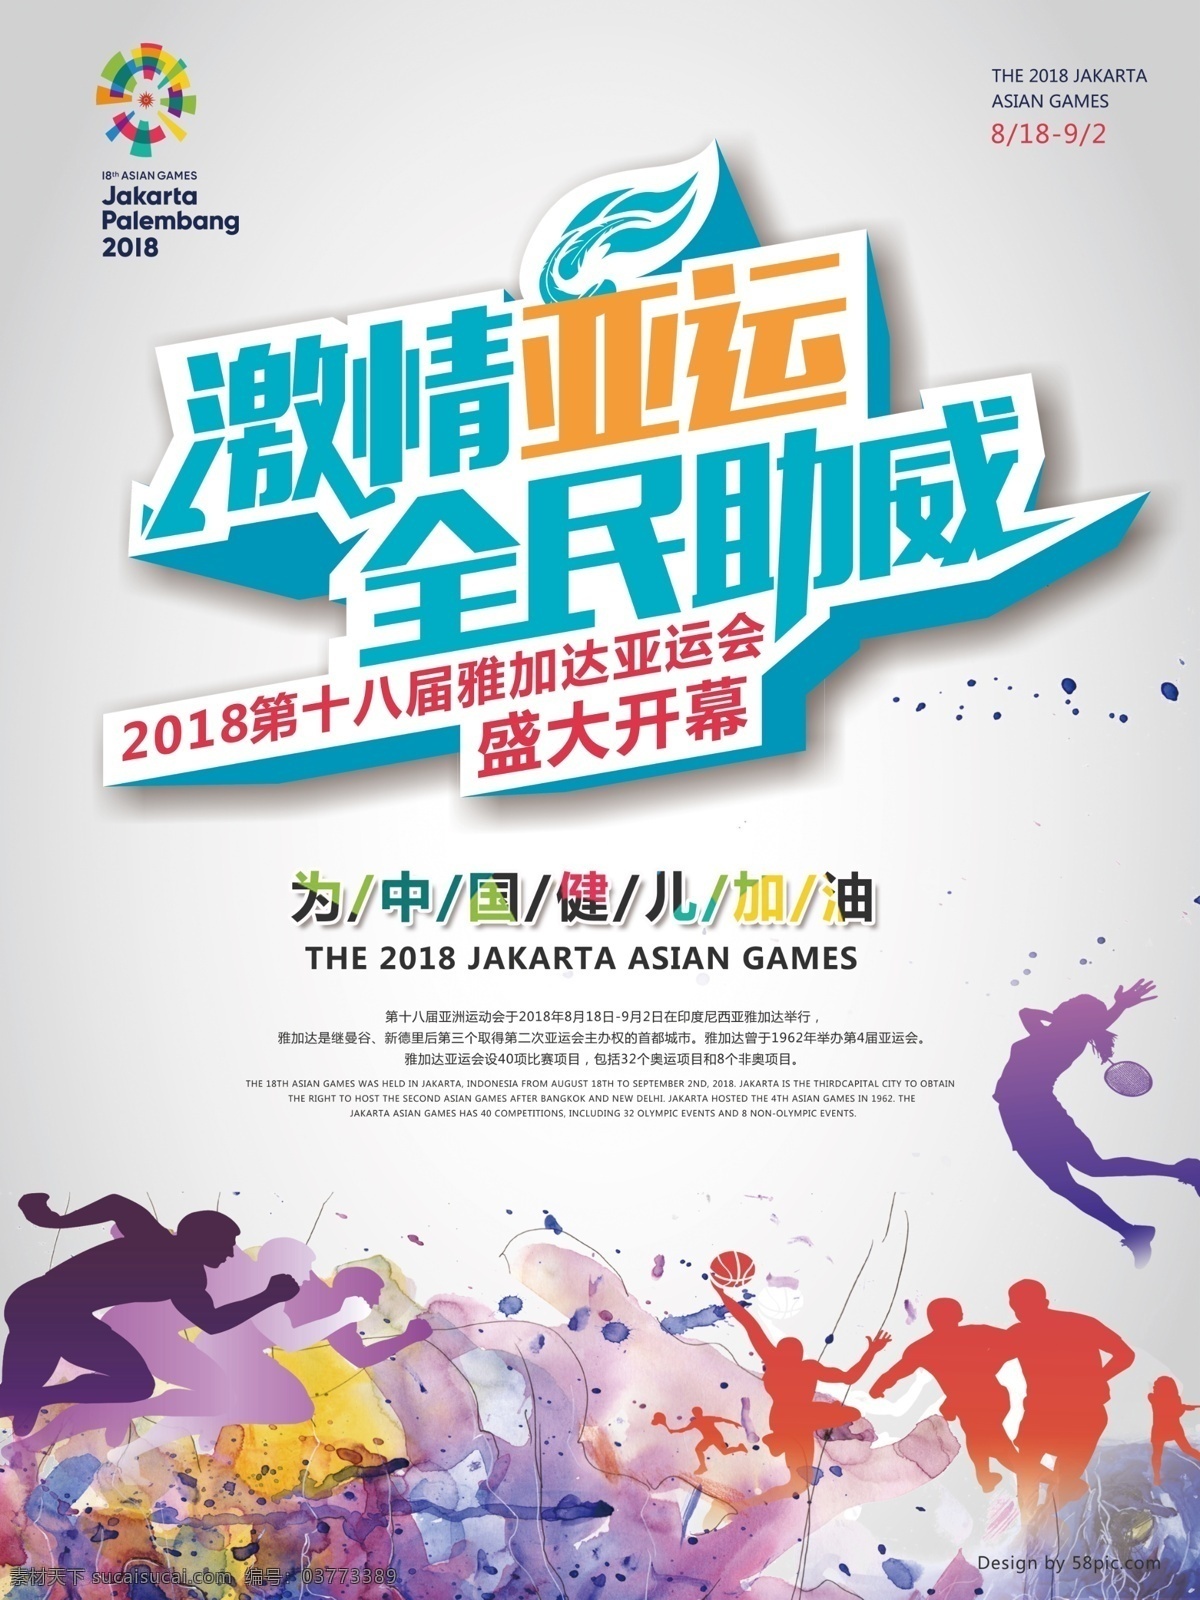 2018 亚运会 宣传海报 加油 体育海报 盛大开幕 运动会 运动 激情亚运 助威 亚运海报 中国健儿 雅加达 体育比赛